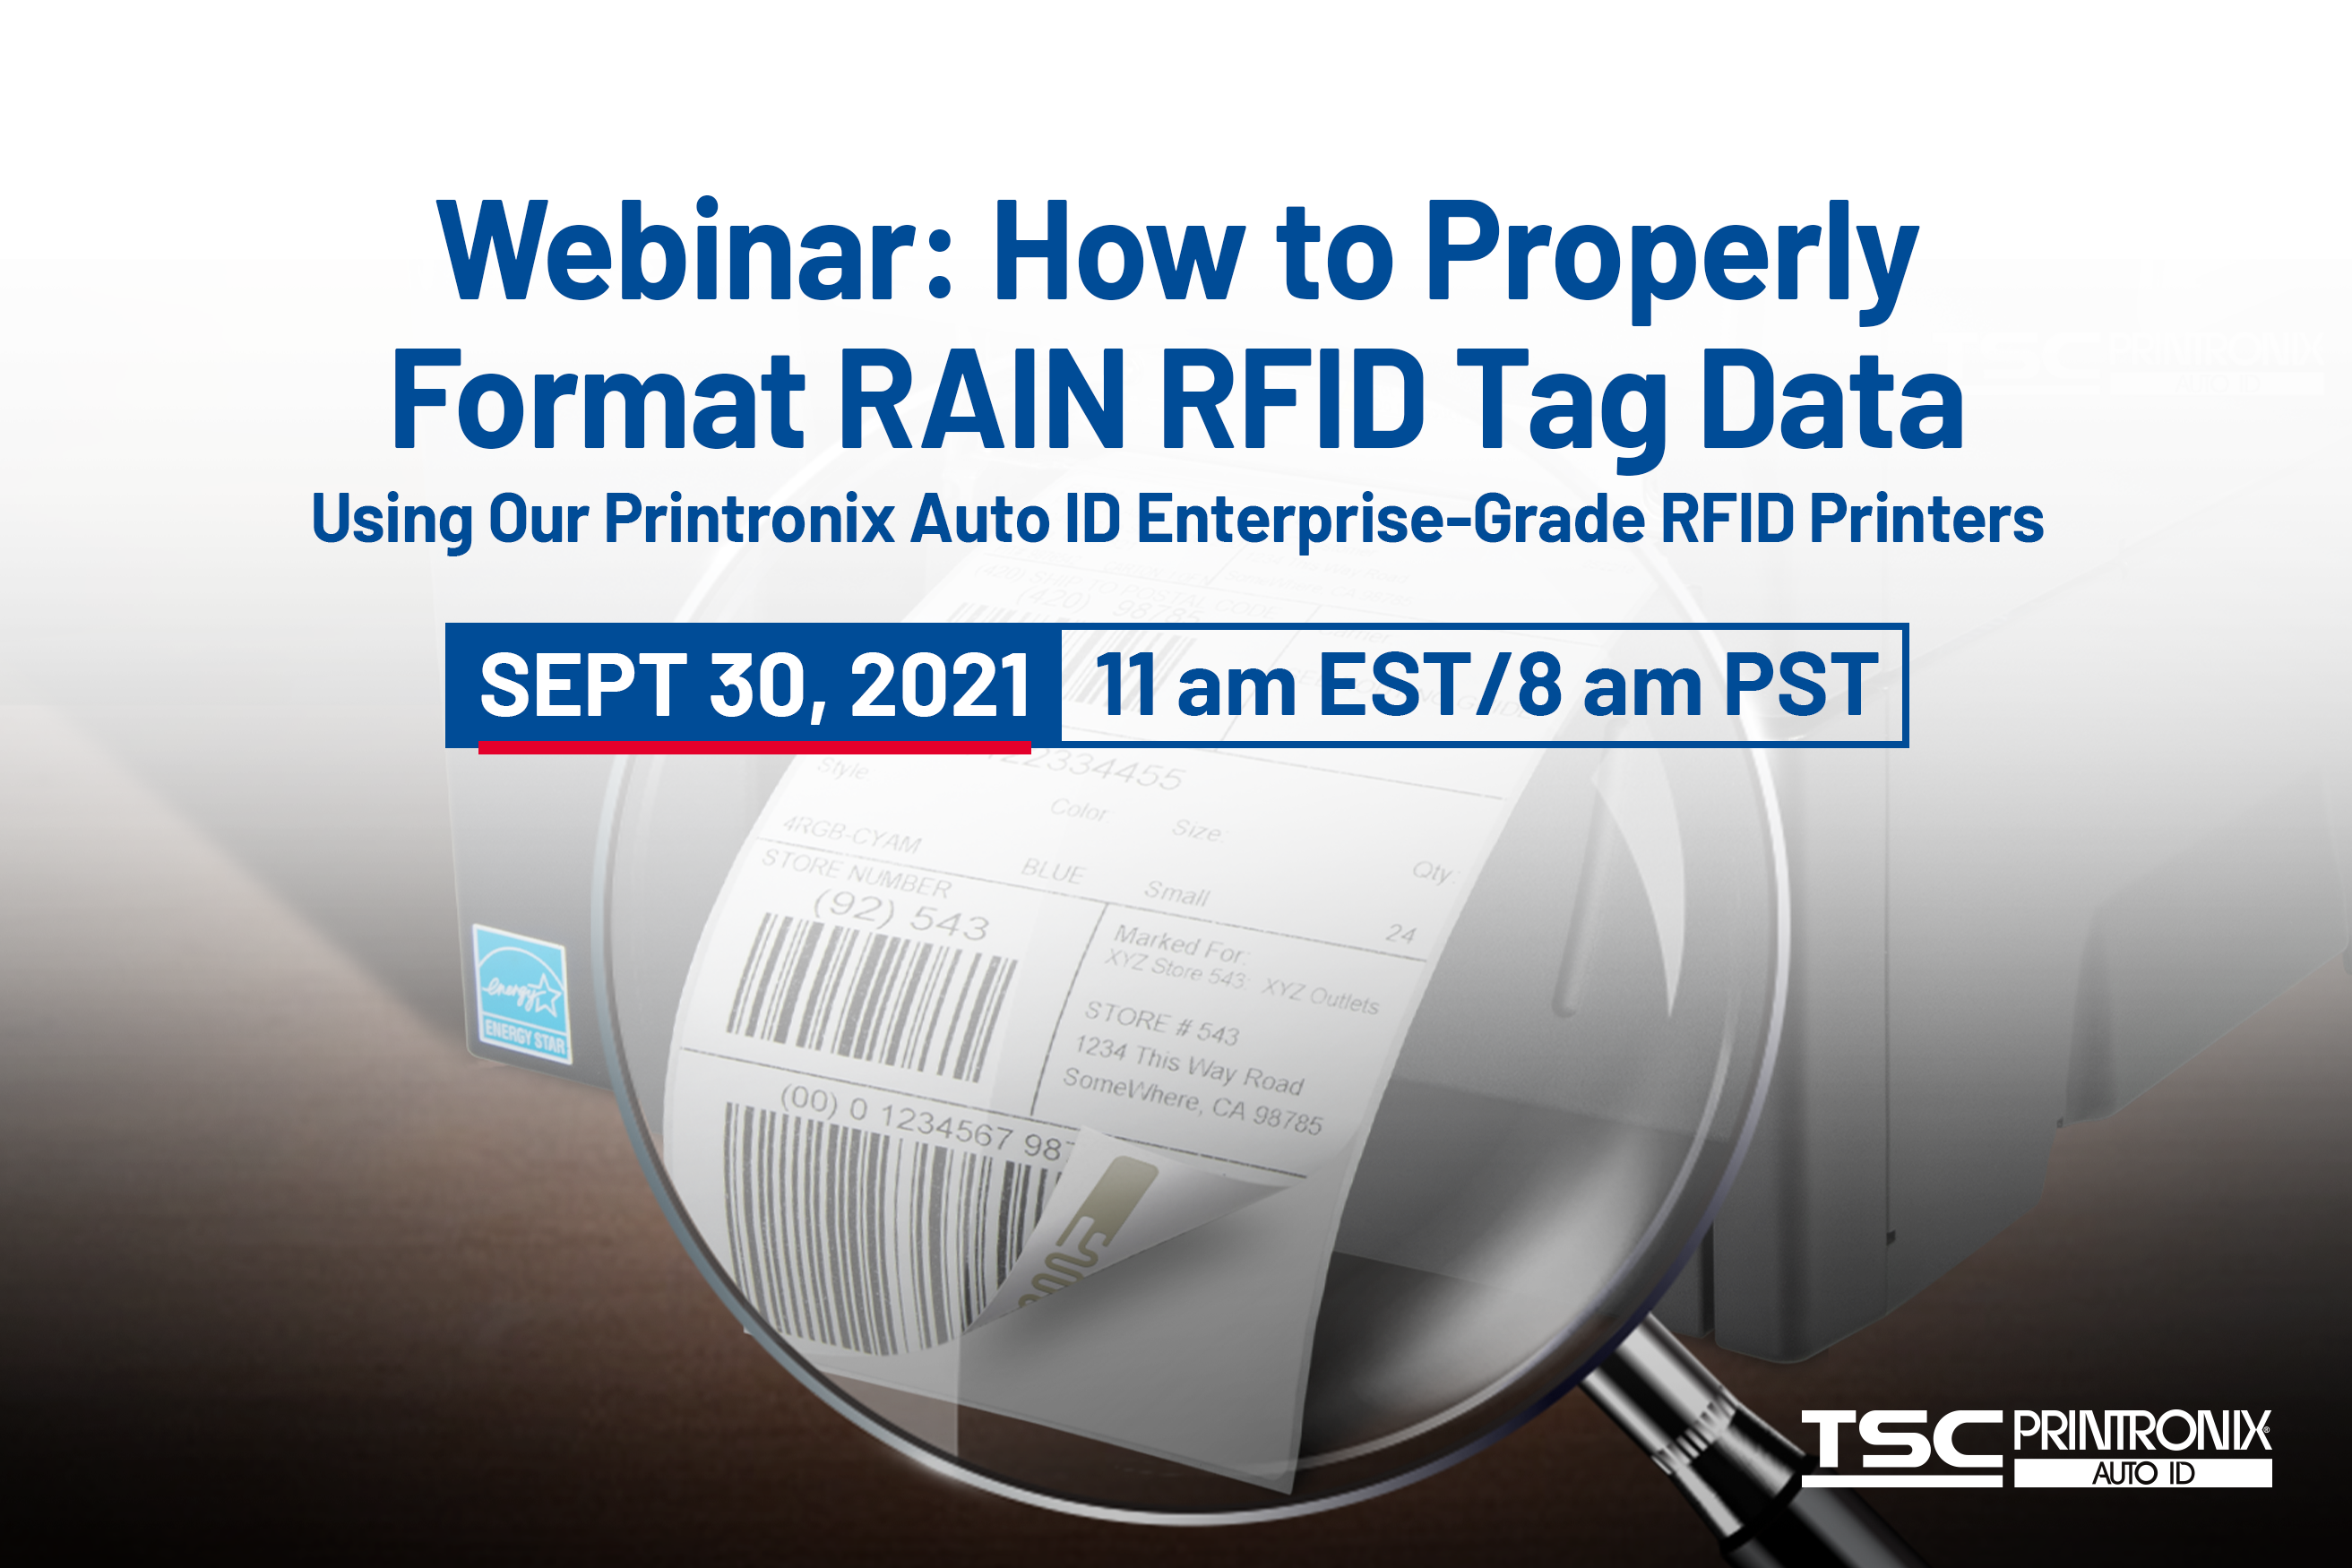 “Cómo formatear correctamente los datos de etiquetas RAIN RFID “con las impresoras Printronix Auto ID de grado empresarial